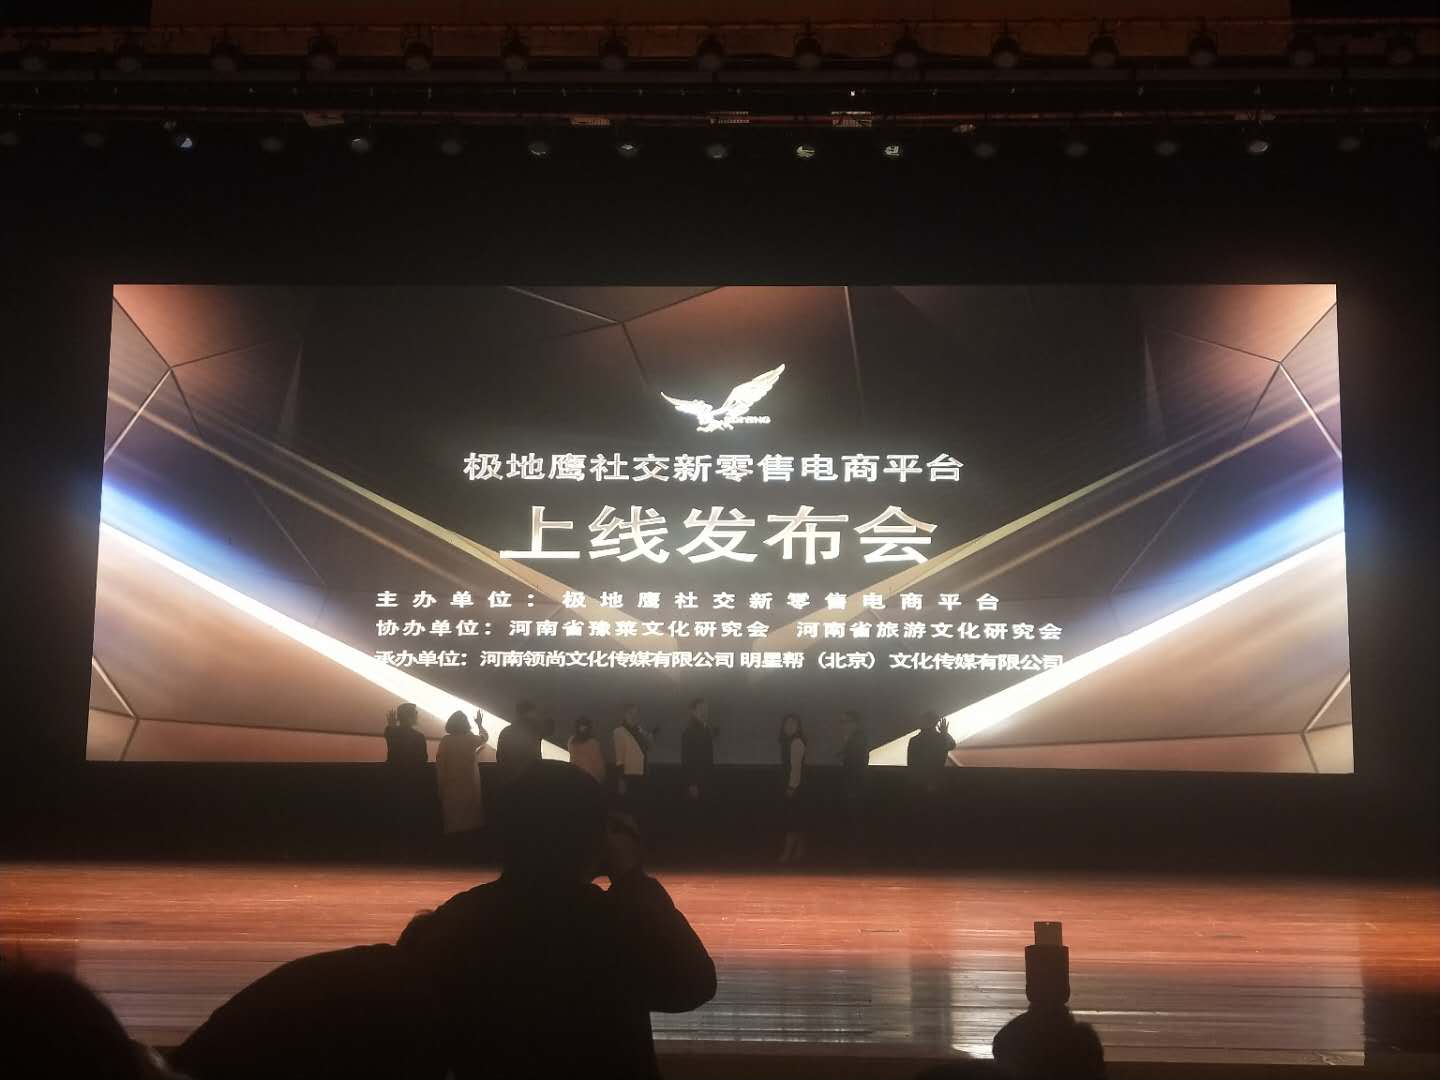 极地鹰社交新零售电商平台上线发布会在郑州举行